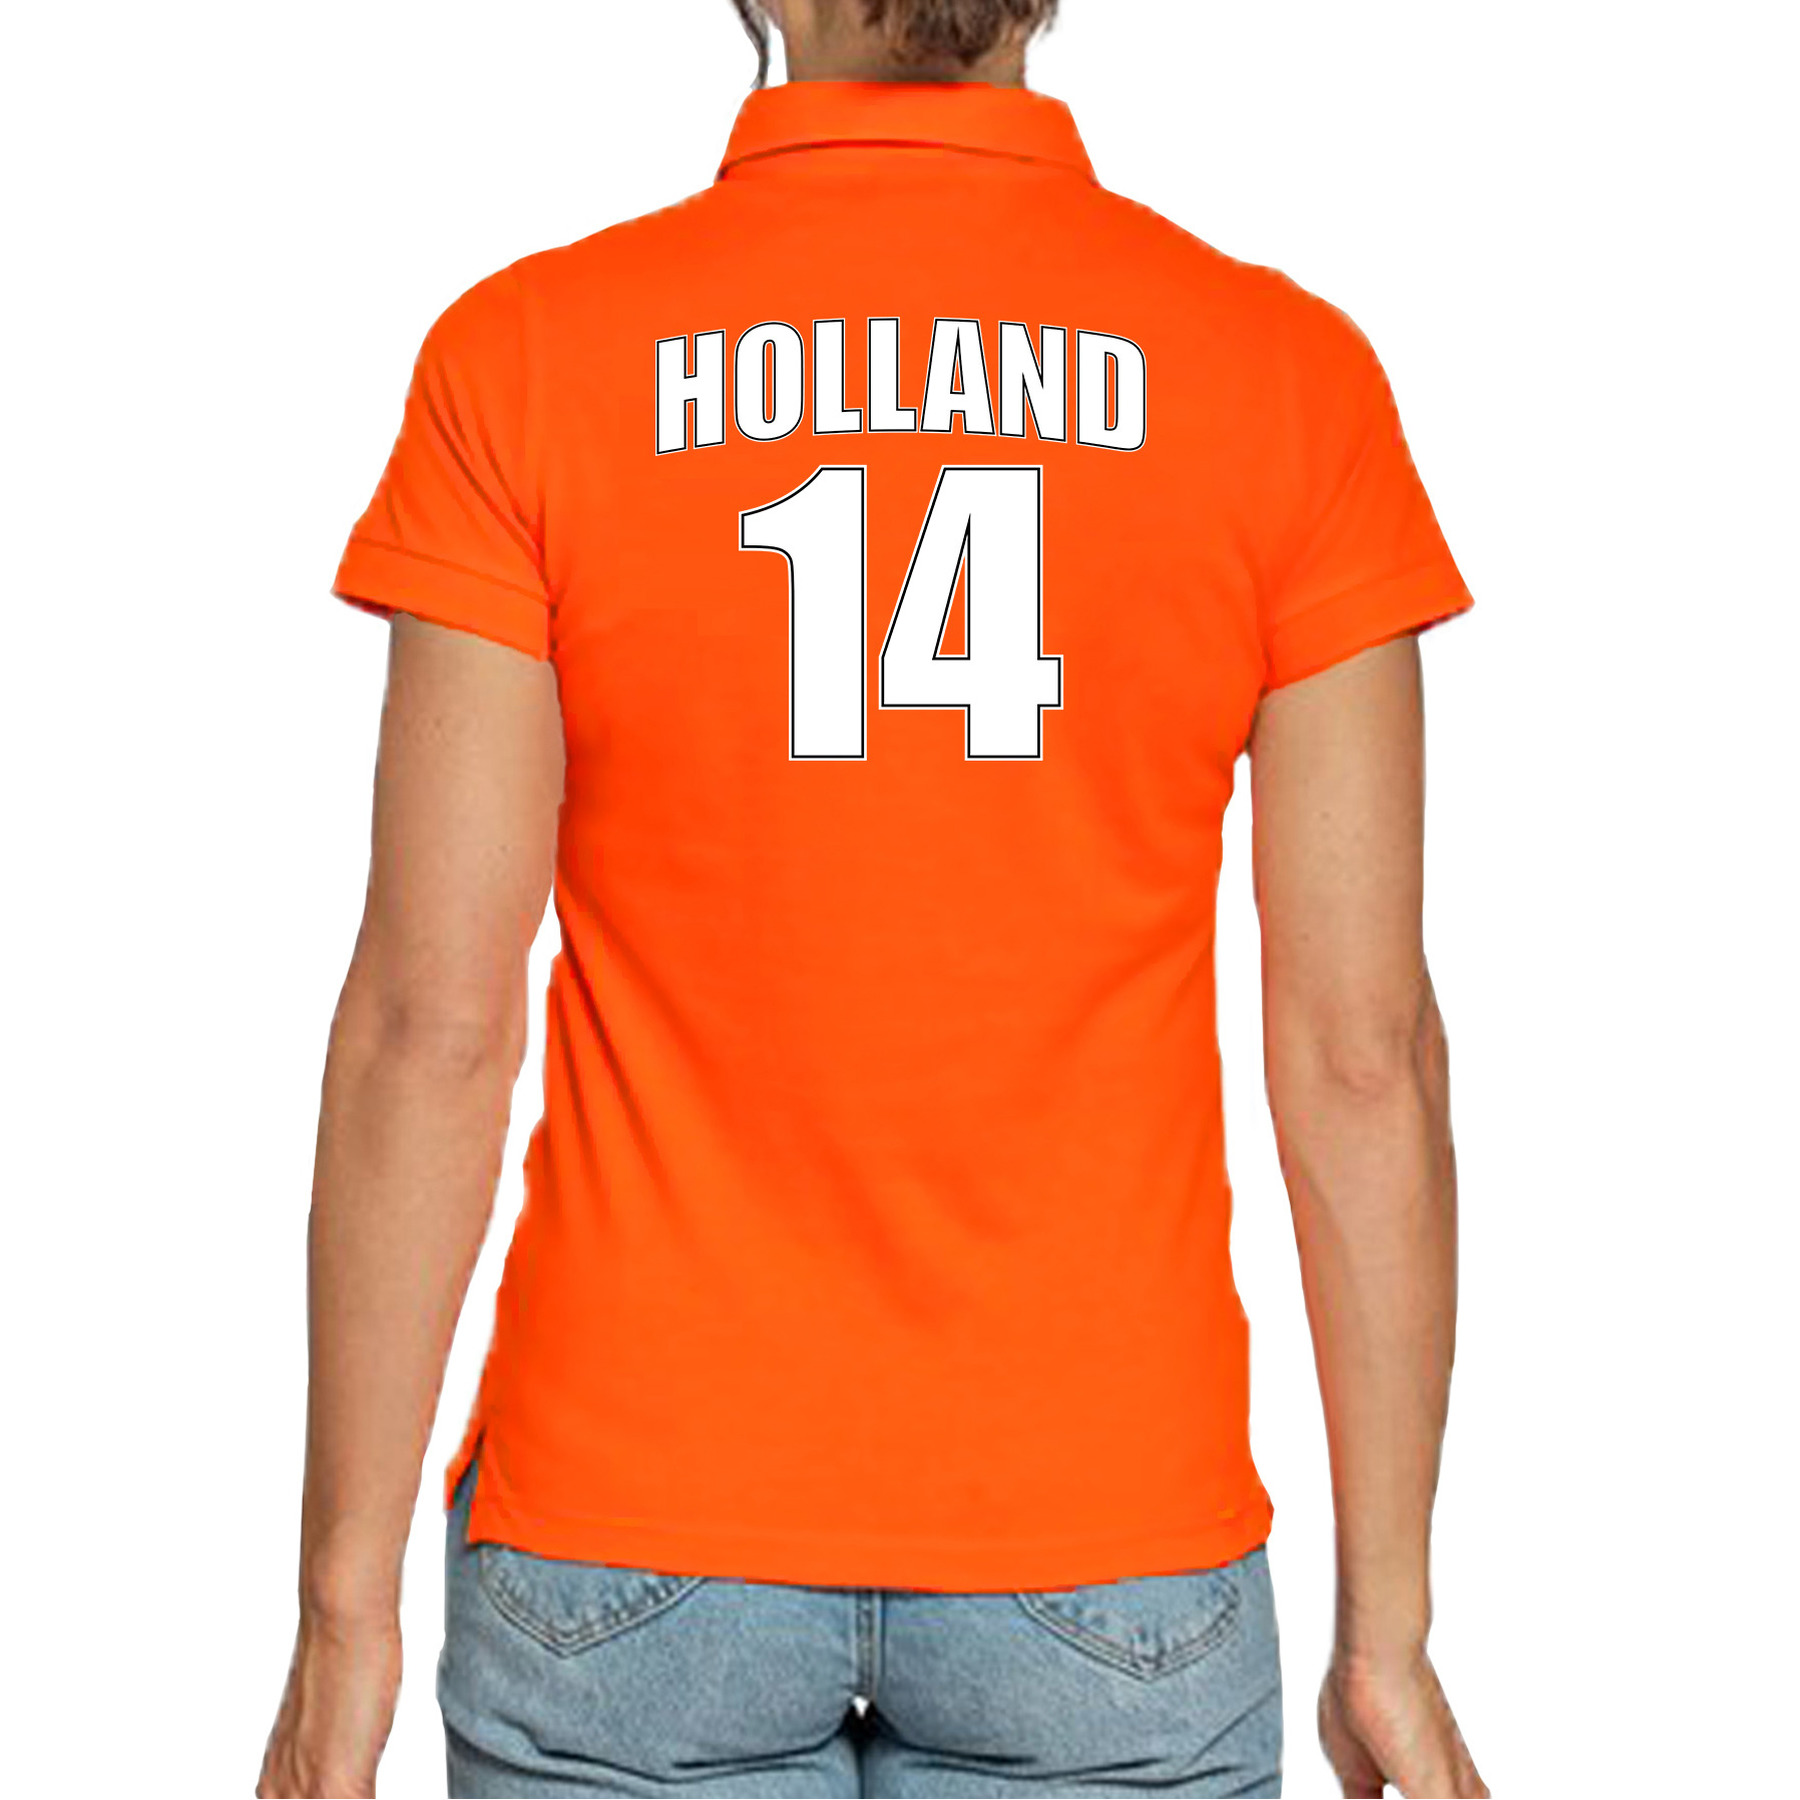 Oranje supporter poloshirt met rugnummer 14 - Holland - Nederland fan shirt voor dames